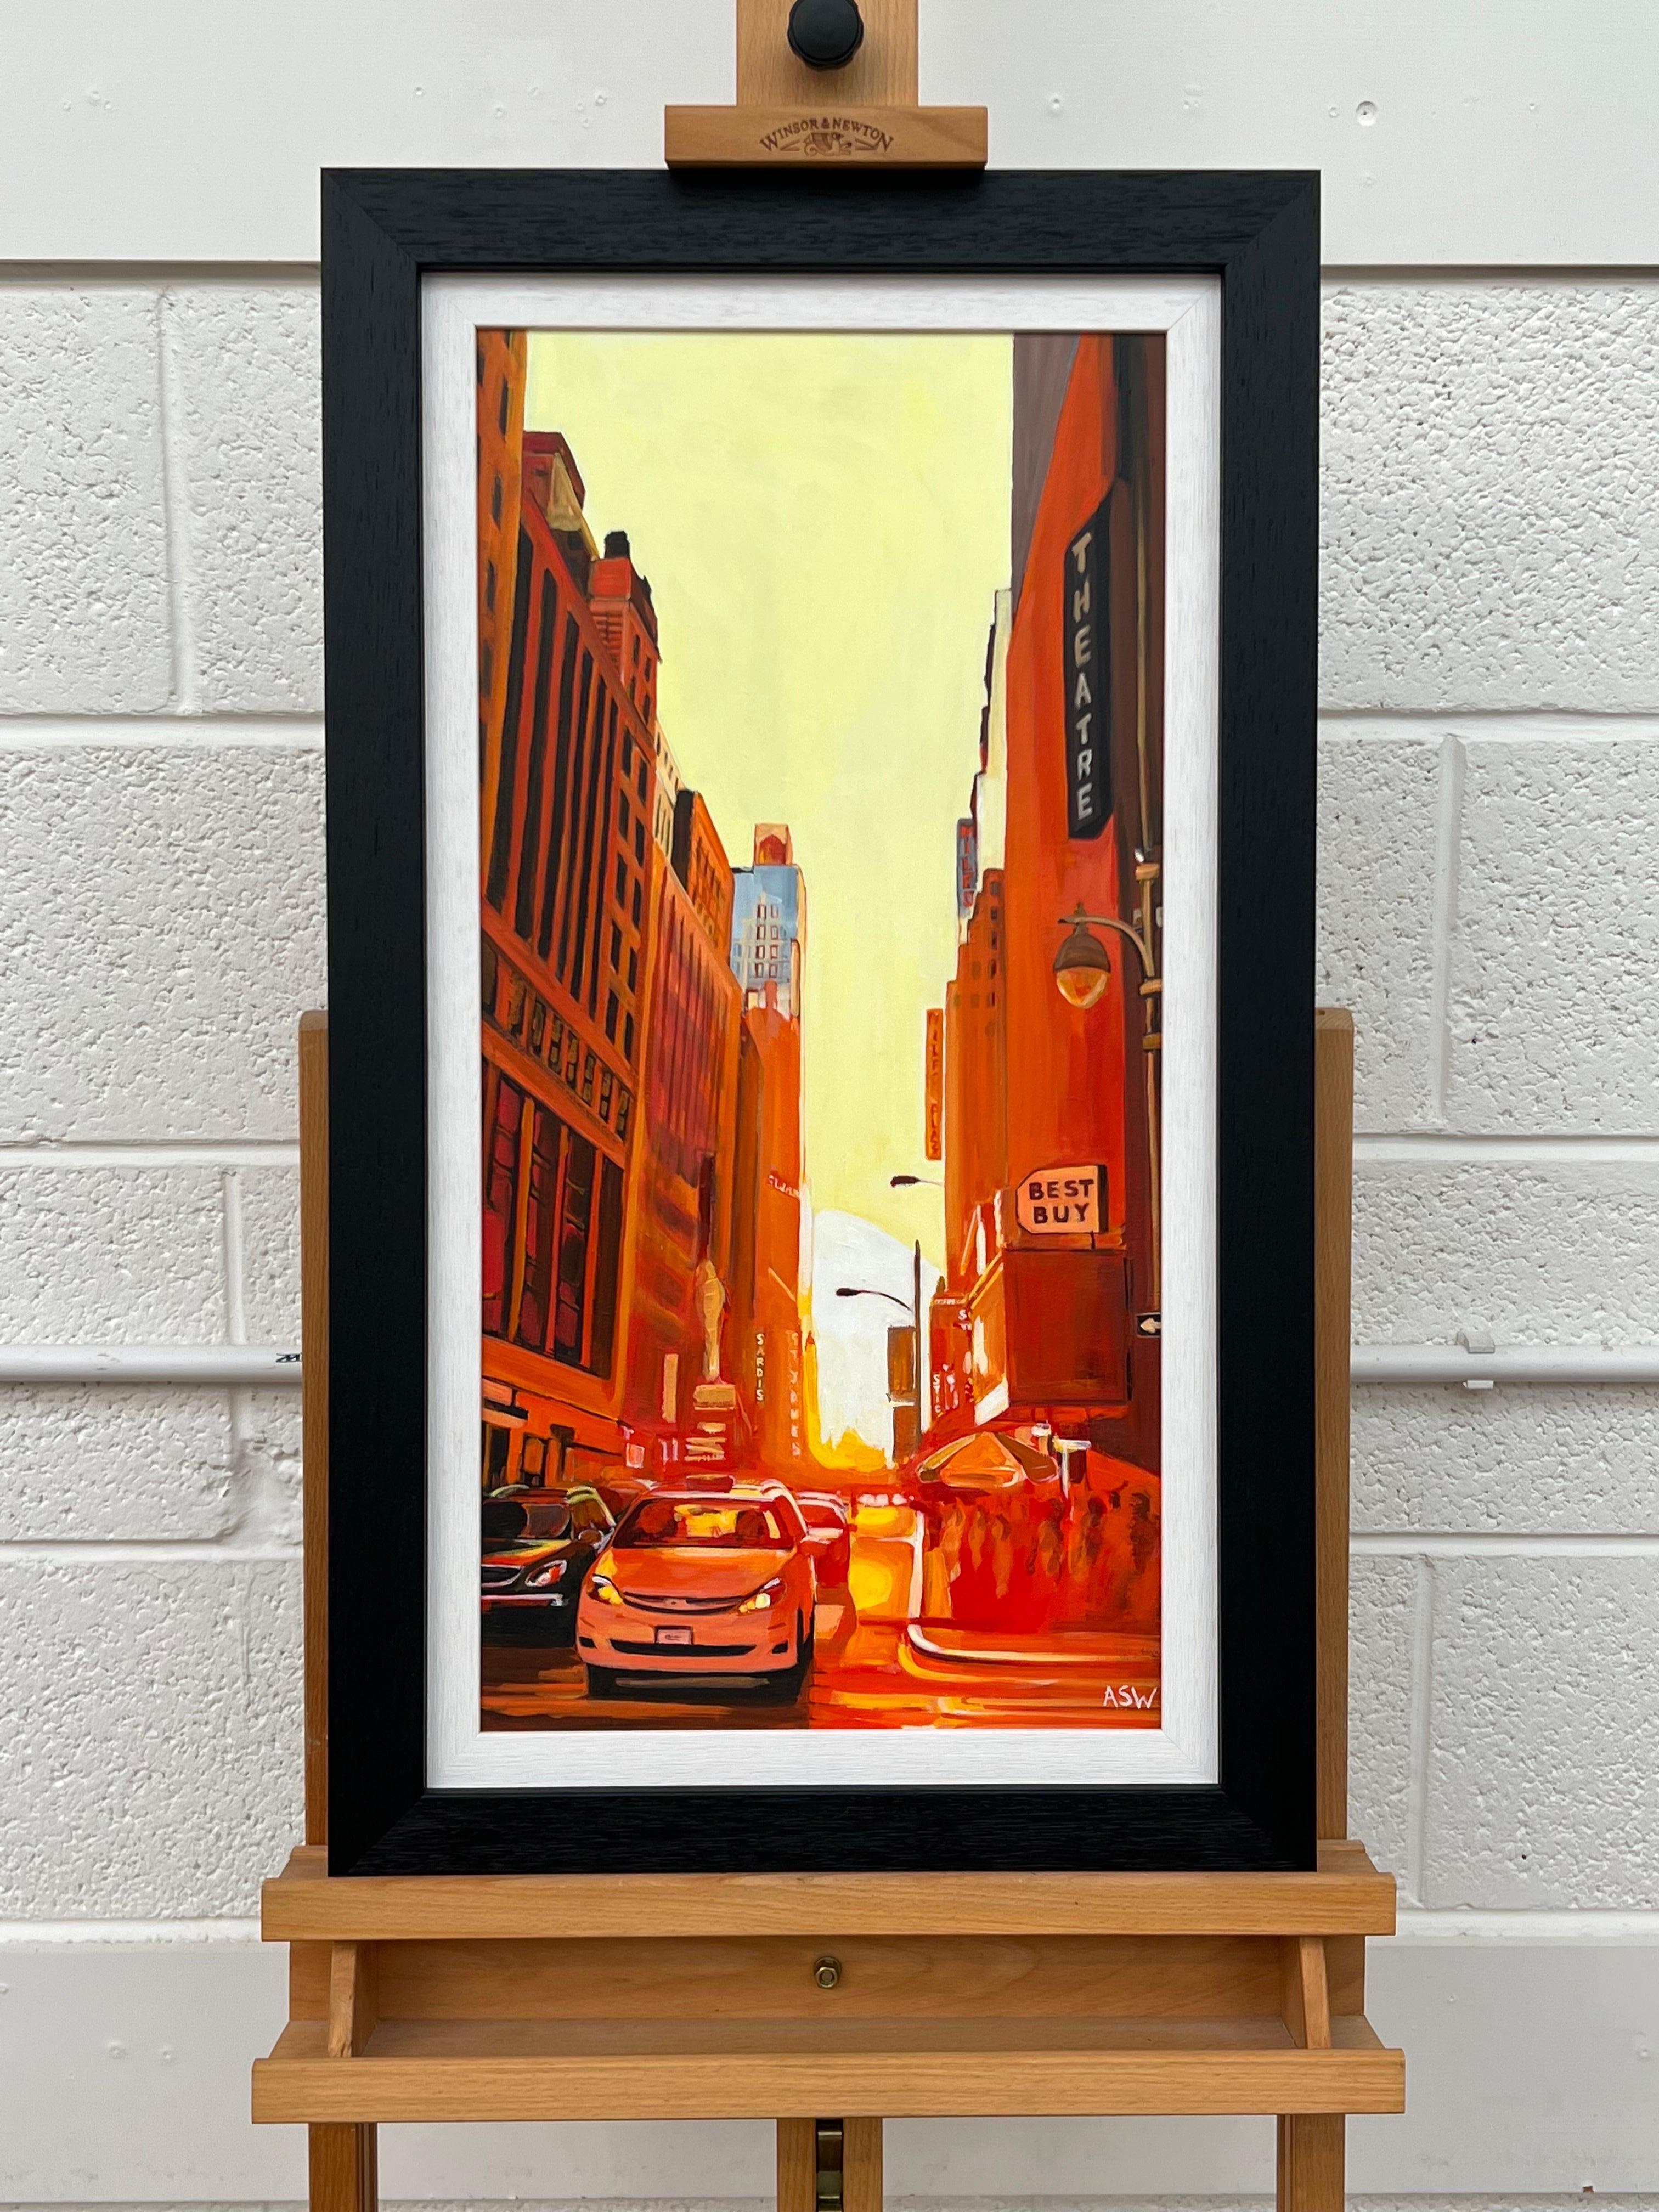 Straßenszene im Manhattan Theatre District New York City bei Sonnenuntergang von der britischen Künstlerin Angela Wakefield.

Kunst misst 12 x 24 Zoll
Rahmenmaß 16 x 28 Zoll

Wakefields Werk ist eine einzigartige Mischung aus Abstraktion und